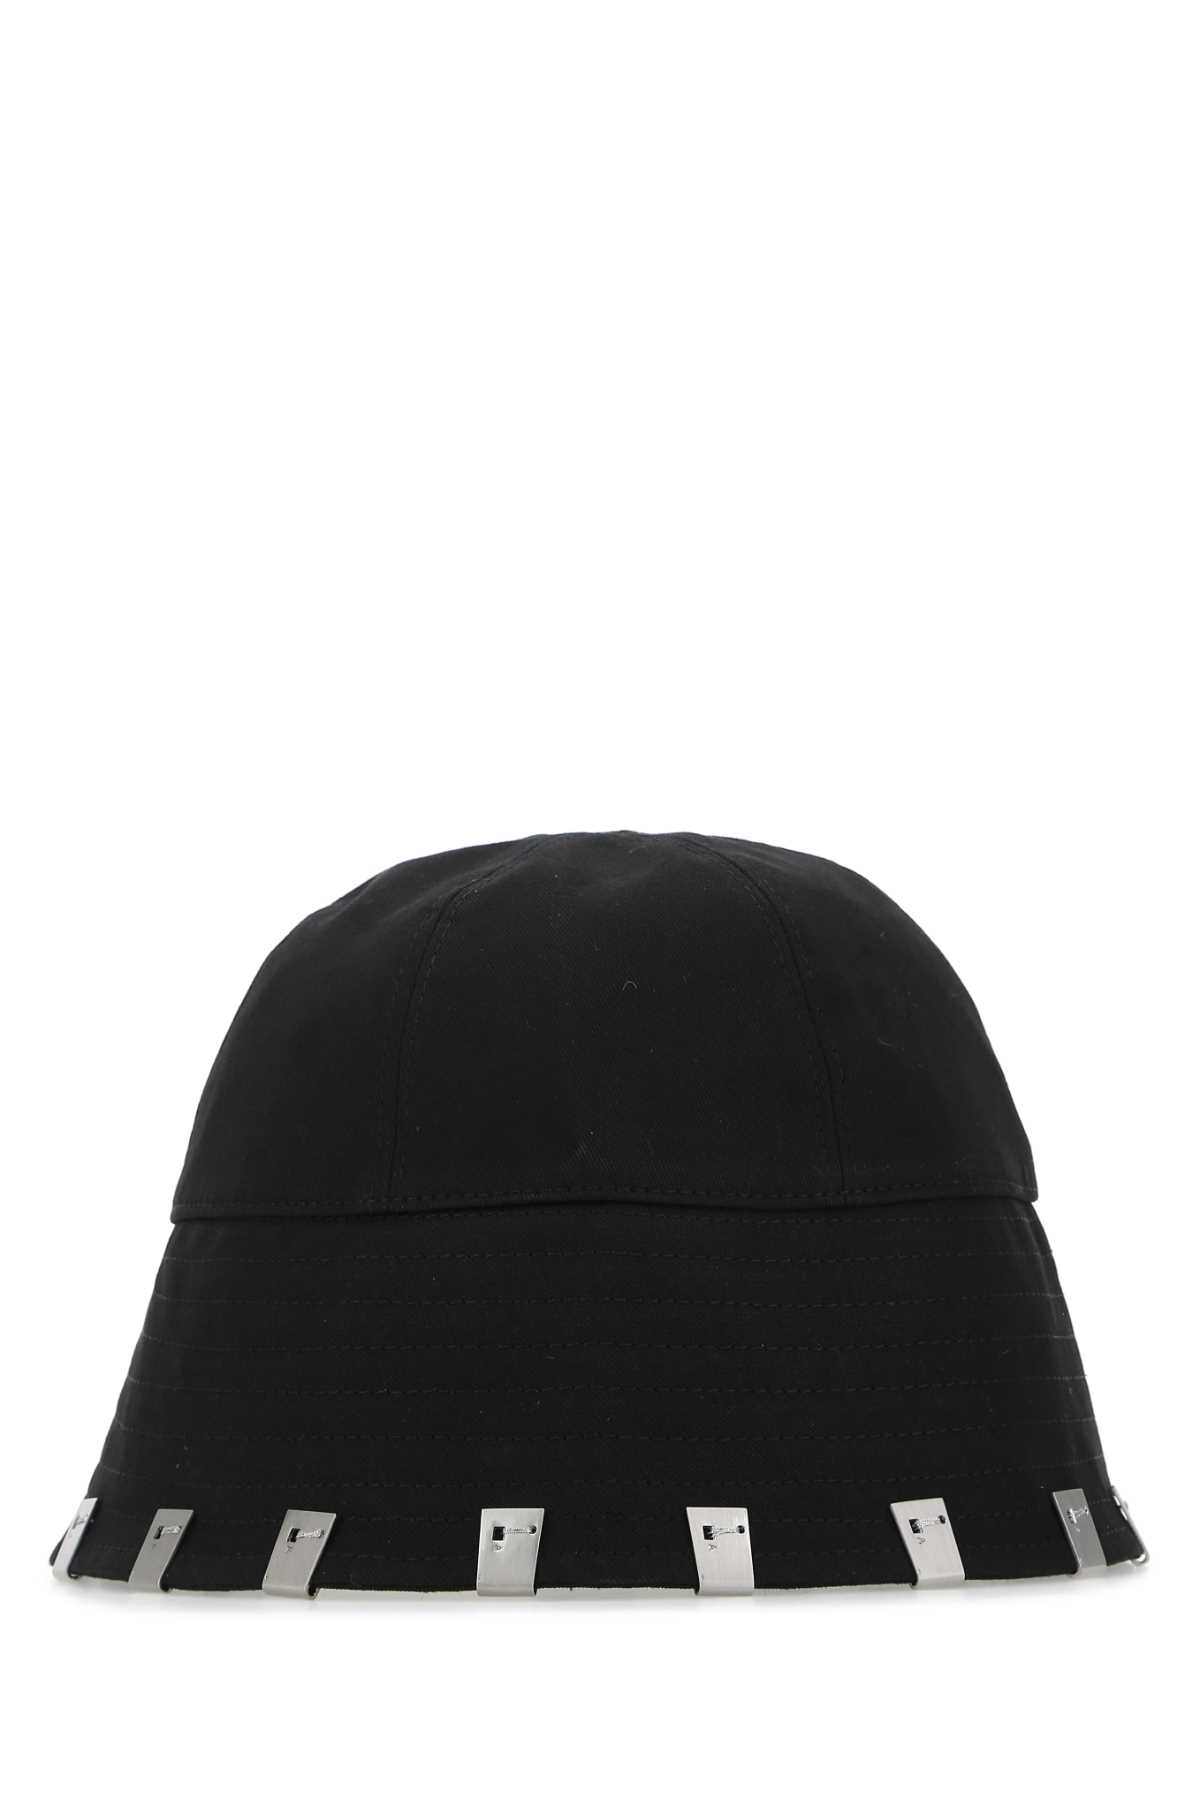 Alyx Black Cotton Hat In Blk0001